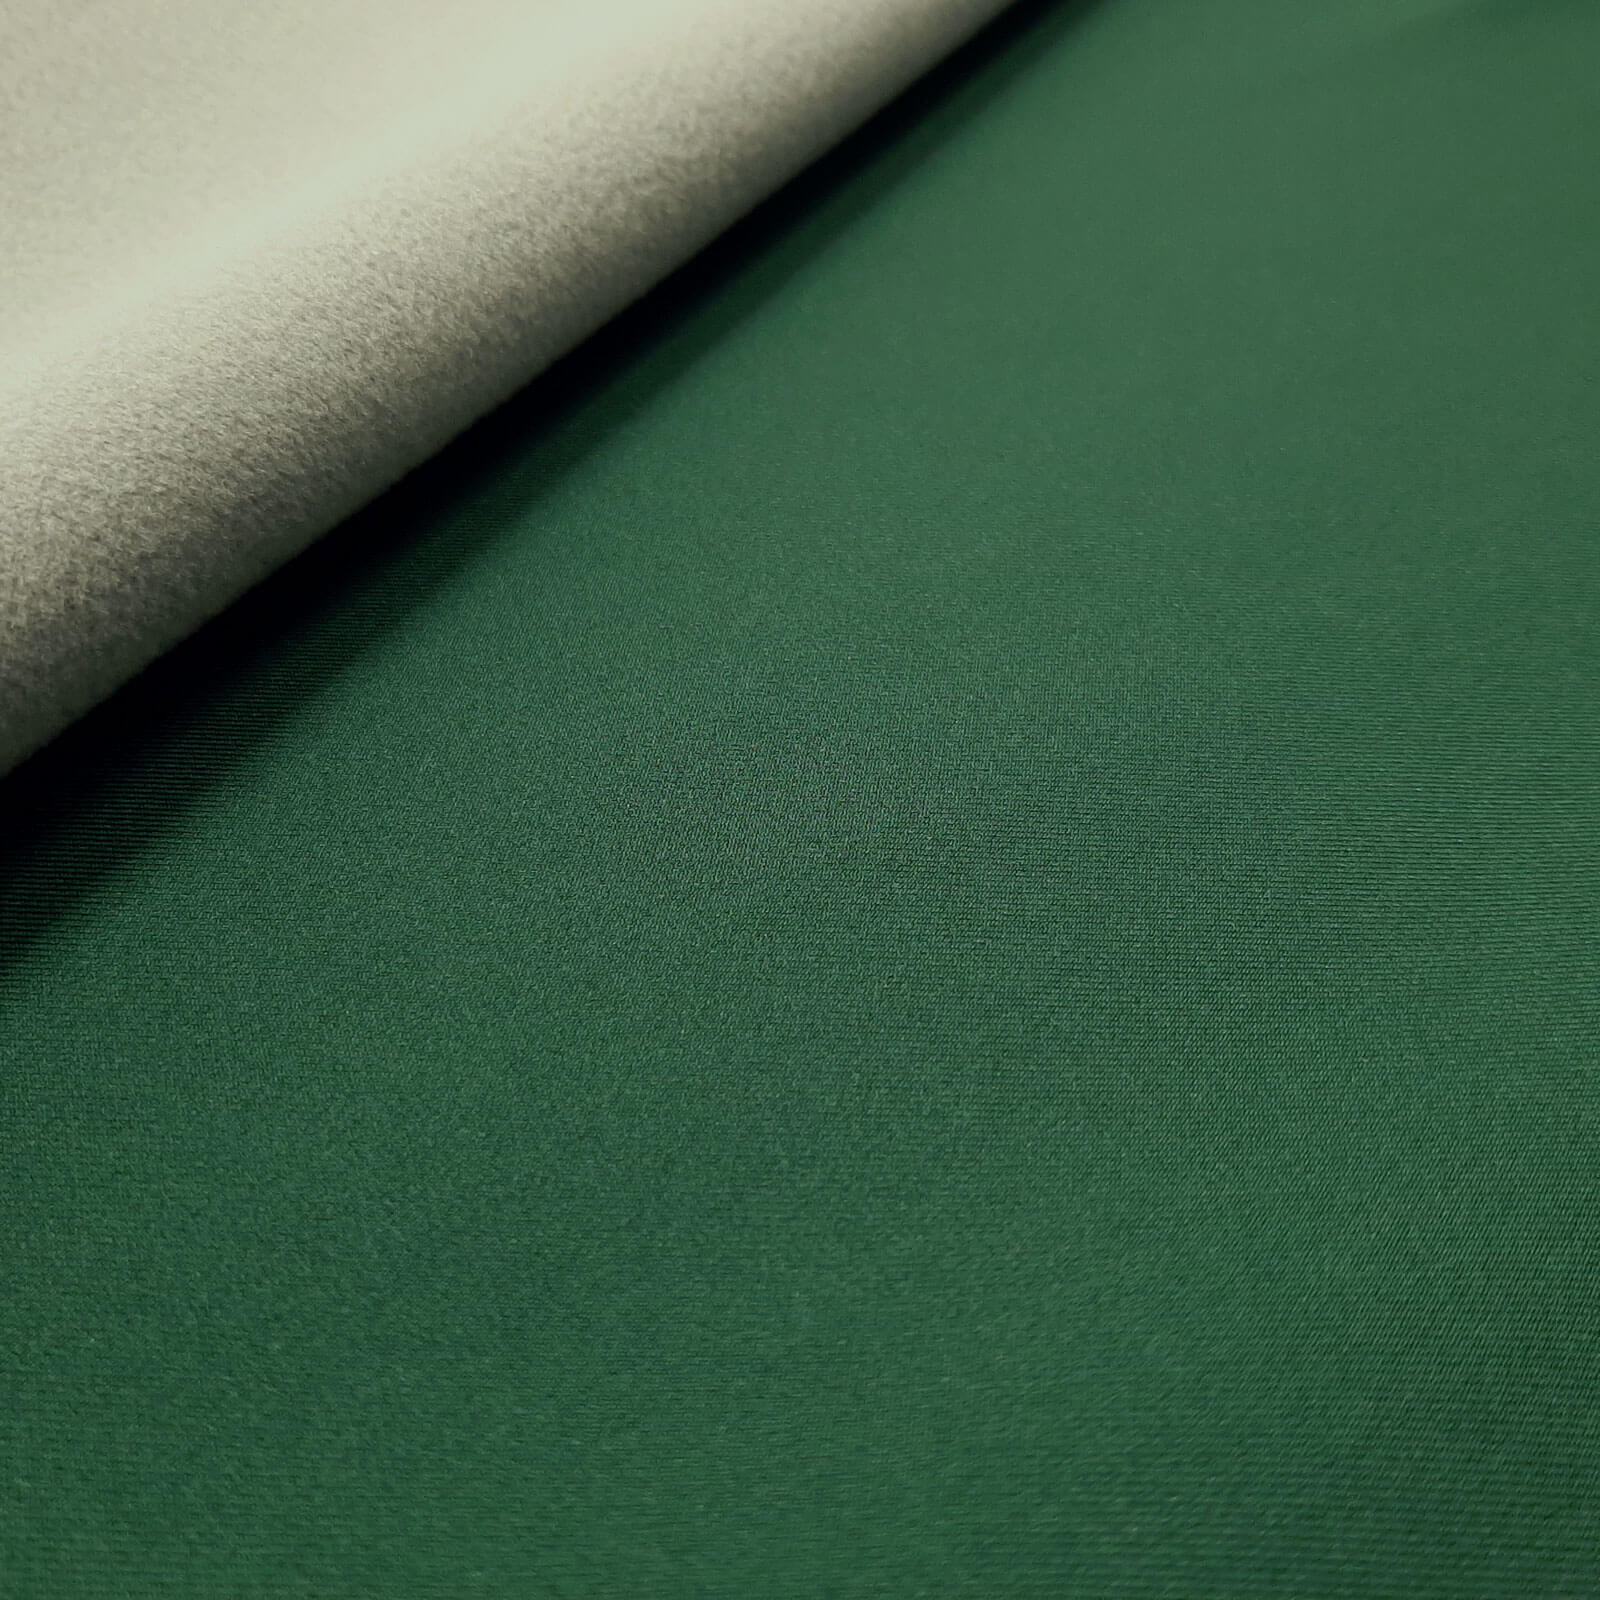 Hugi - Softshell Pontetorto de 3 capas - Estiramiento ligero - Verde oscuro